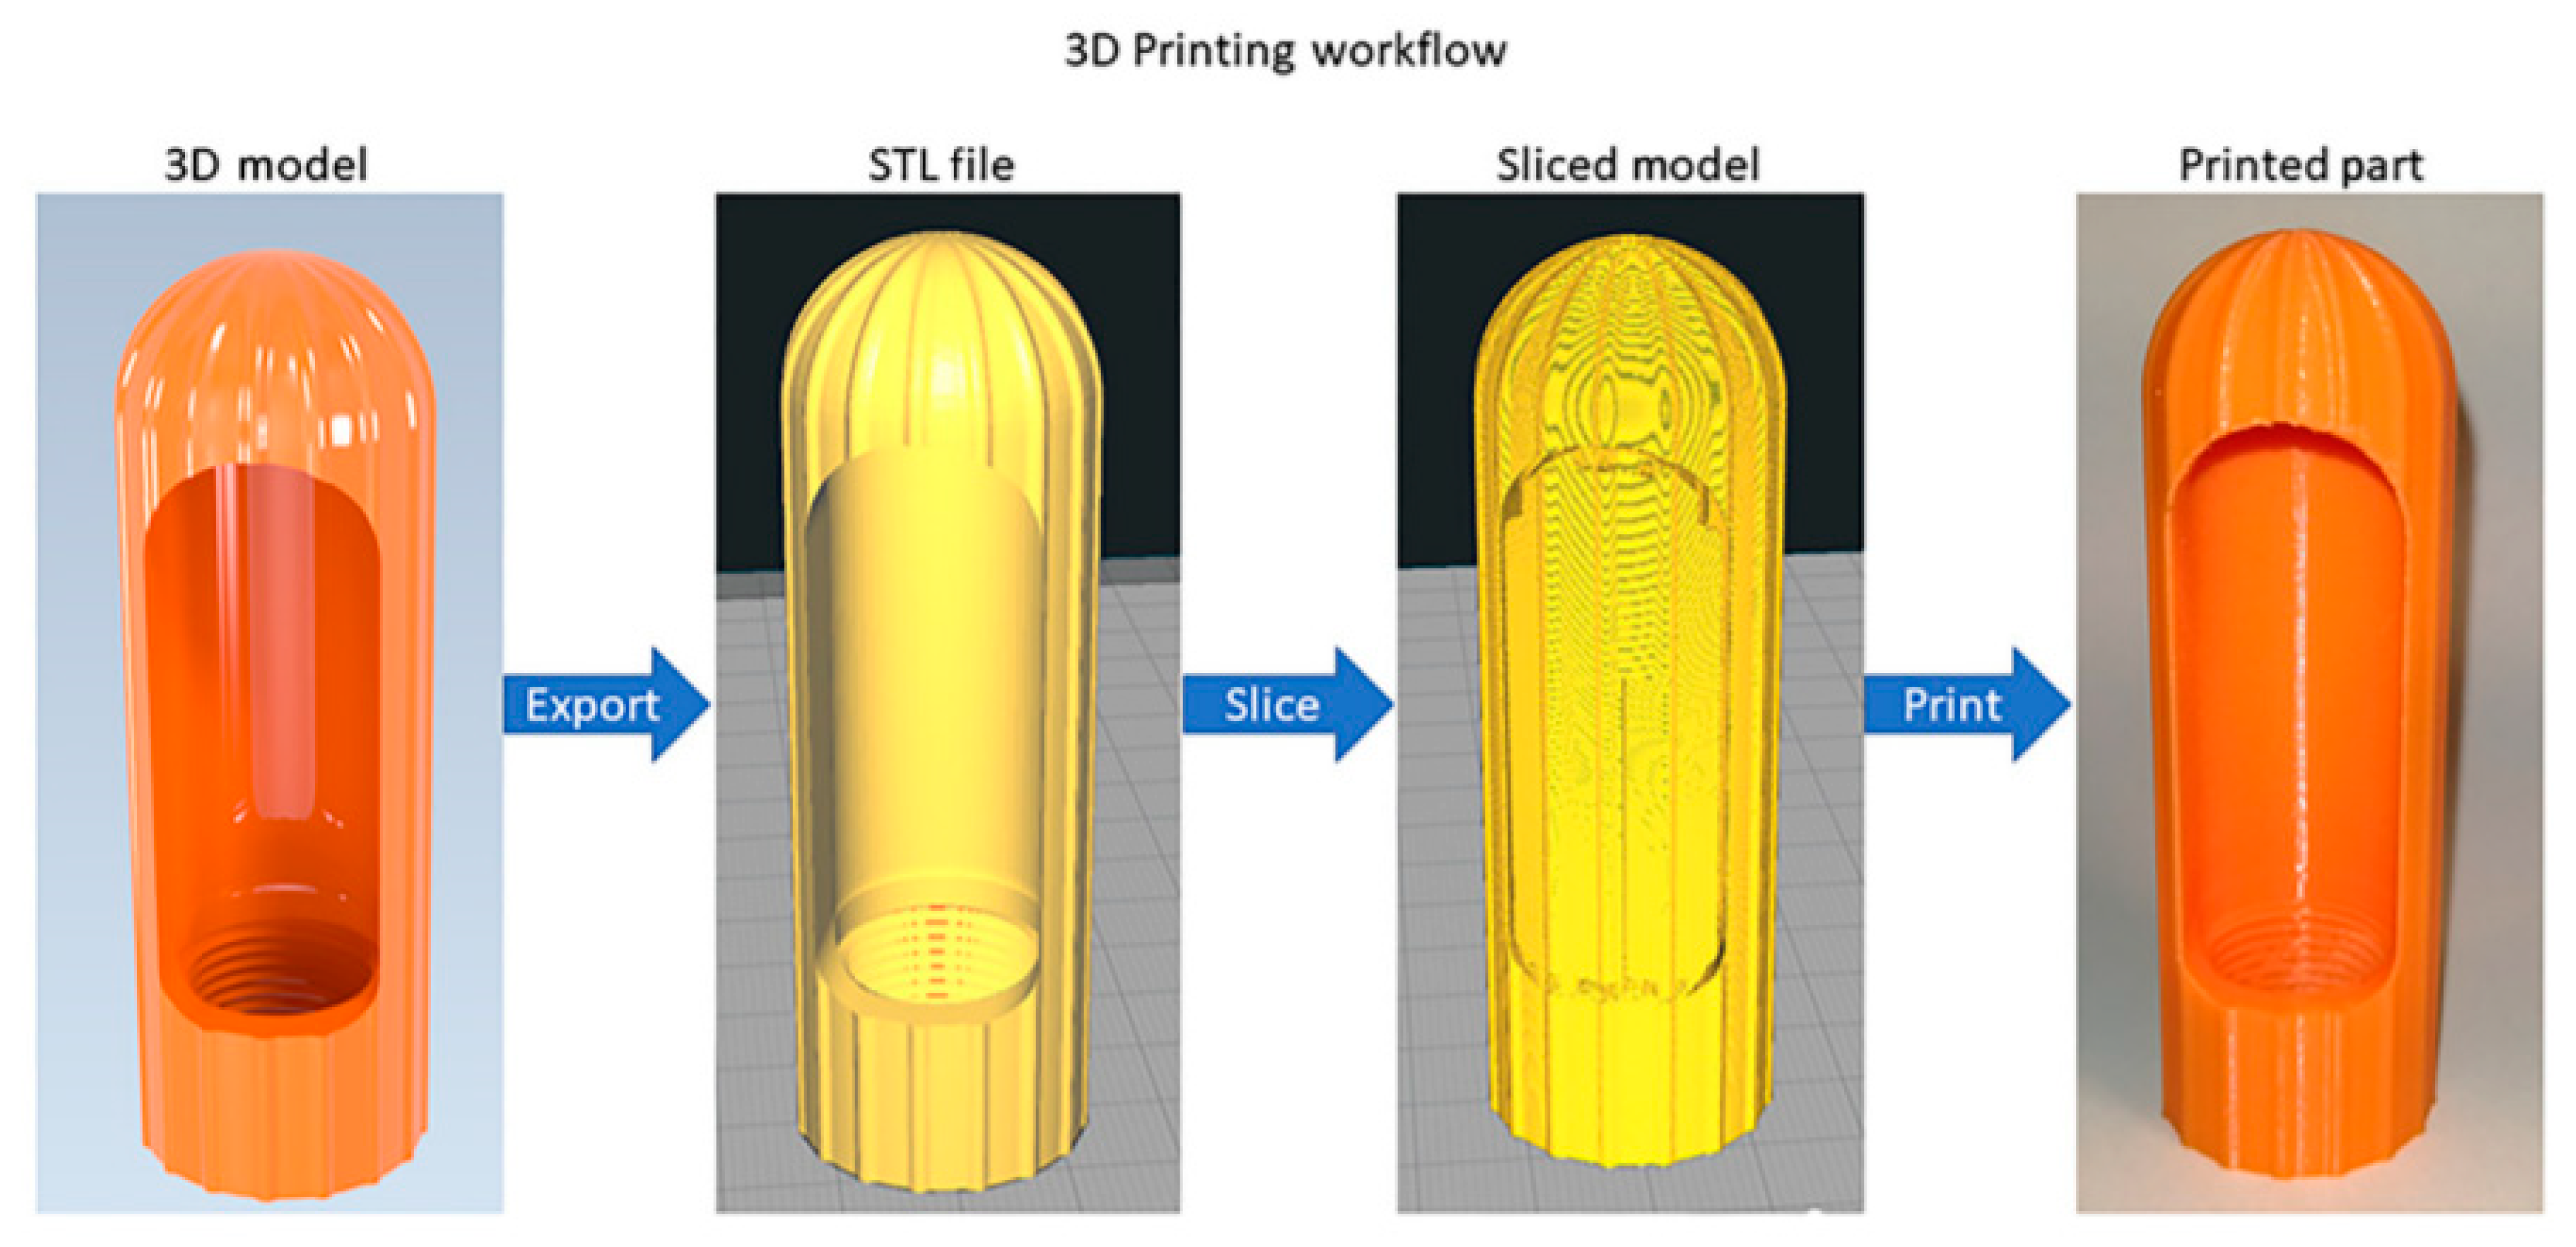 Xử lý sau khi in 3D - Nếu bạn đang muốn in một mô hình 3D nhưng không biết cách xử lý nó sau khi in ra, hãy mạnh dạn hỏi tại sao không? Với các kỹ thuật và công nghệ mới nhất, xử lý sau khi in 3D không bao giờ dễ dàng hơn cả. Tại sao bạn không thử các ý tưởng và công cụ mới để biến các mô hình của mình thành những sản phẩm vô cùng độc đáo.